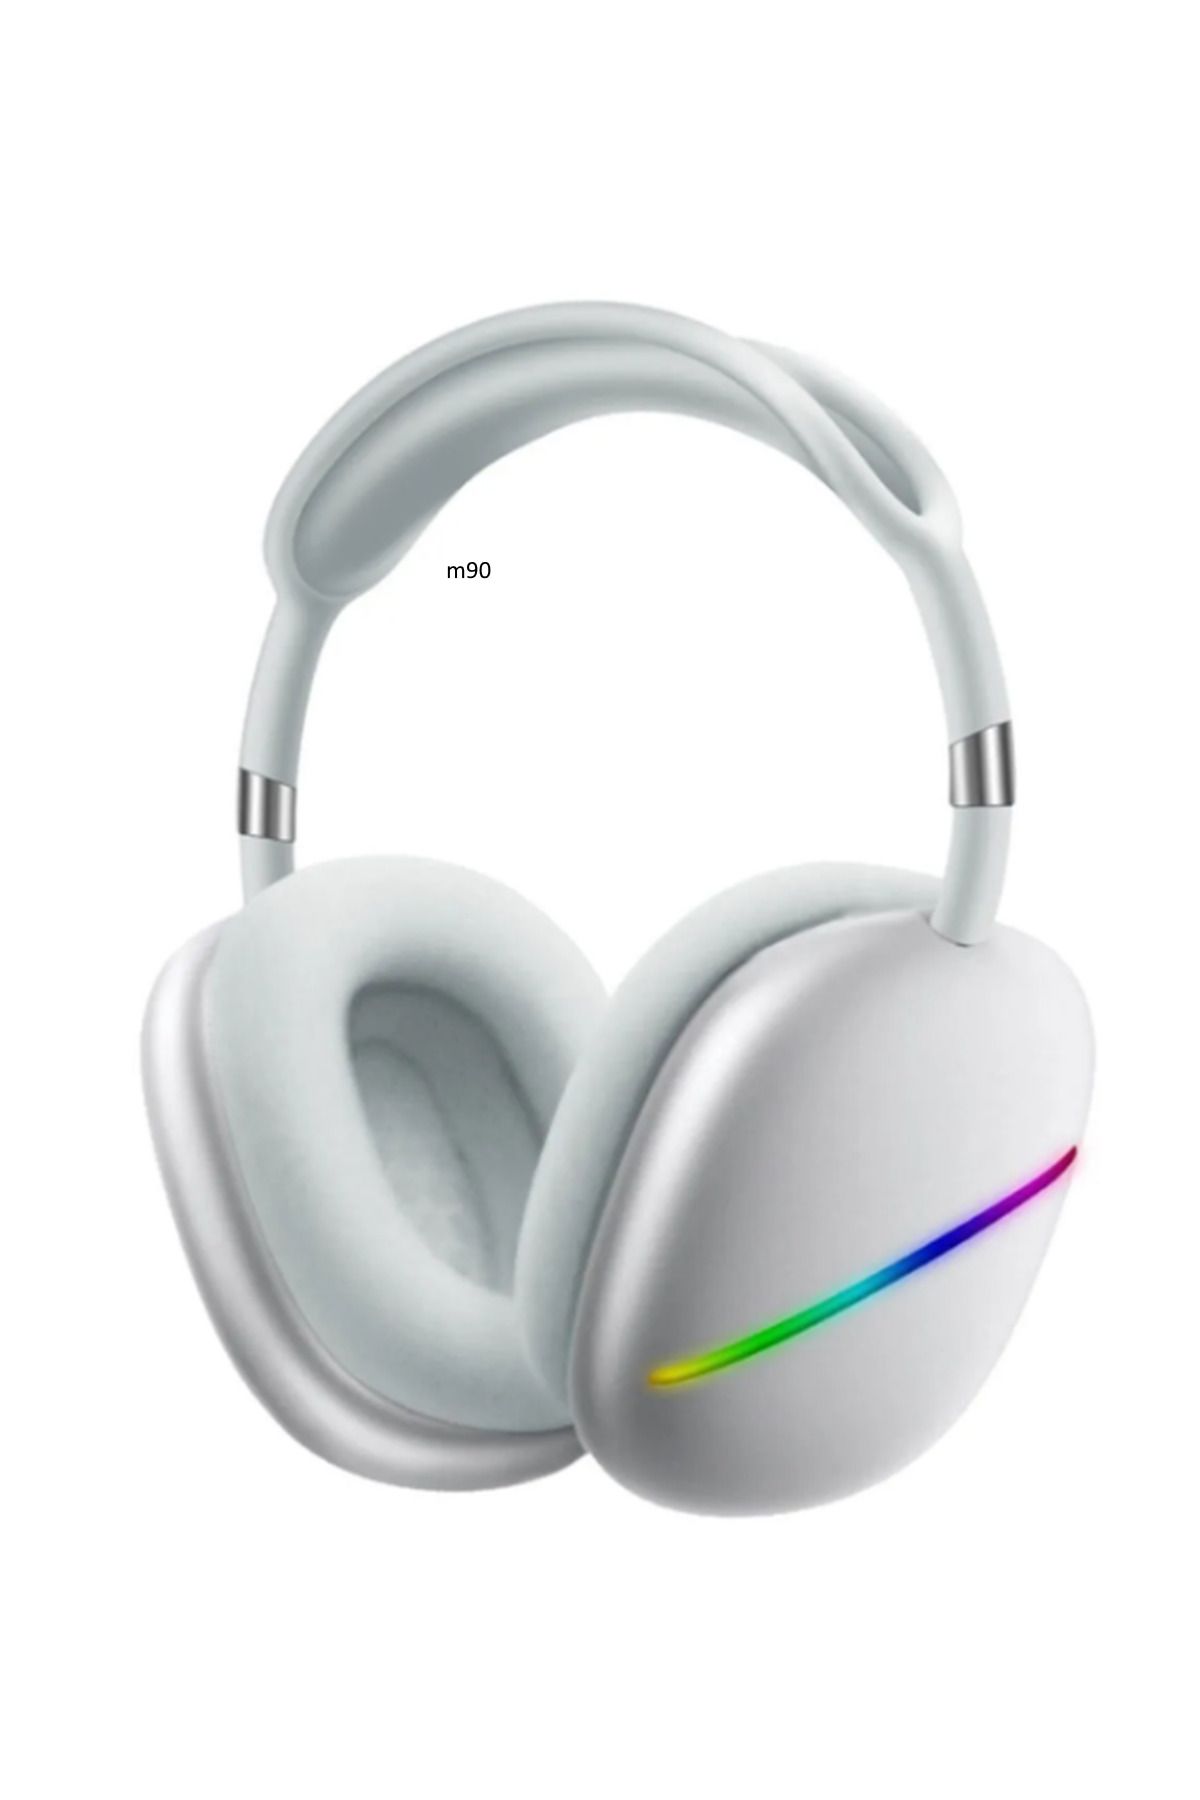 M90 Max10 LED Detaylı Kulak Üstü Bluetooth Kulaklık Bluetooth